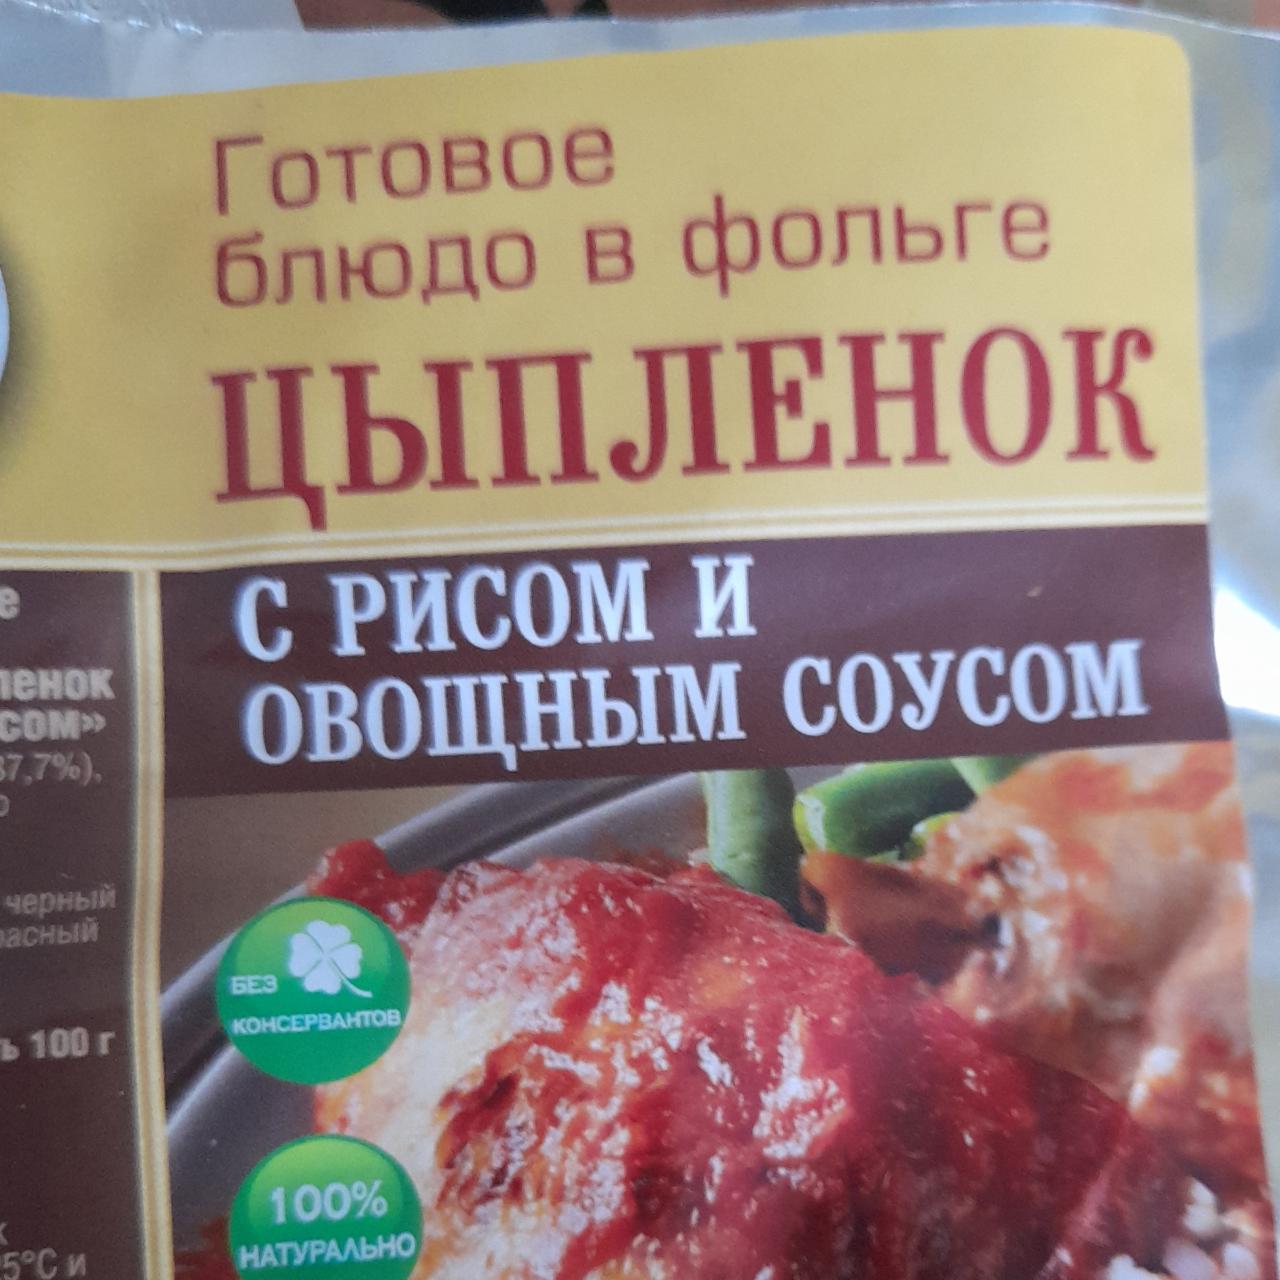 Фото - Цыпленок с рисом, готовое блюдо в фольге Кронидов